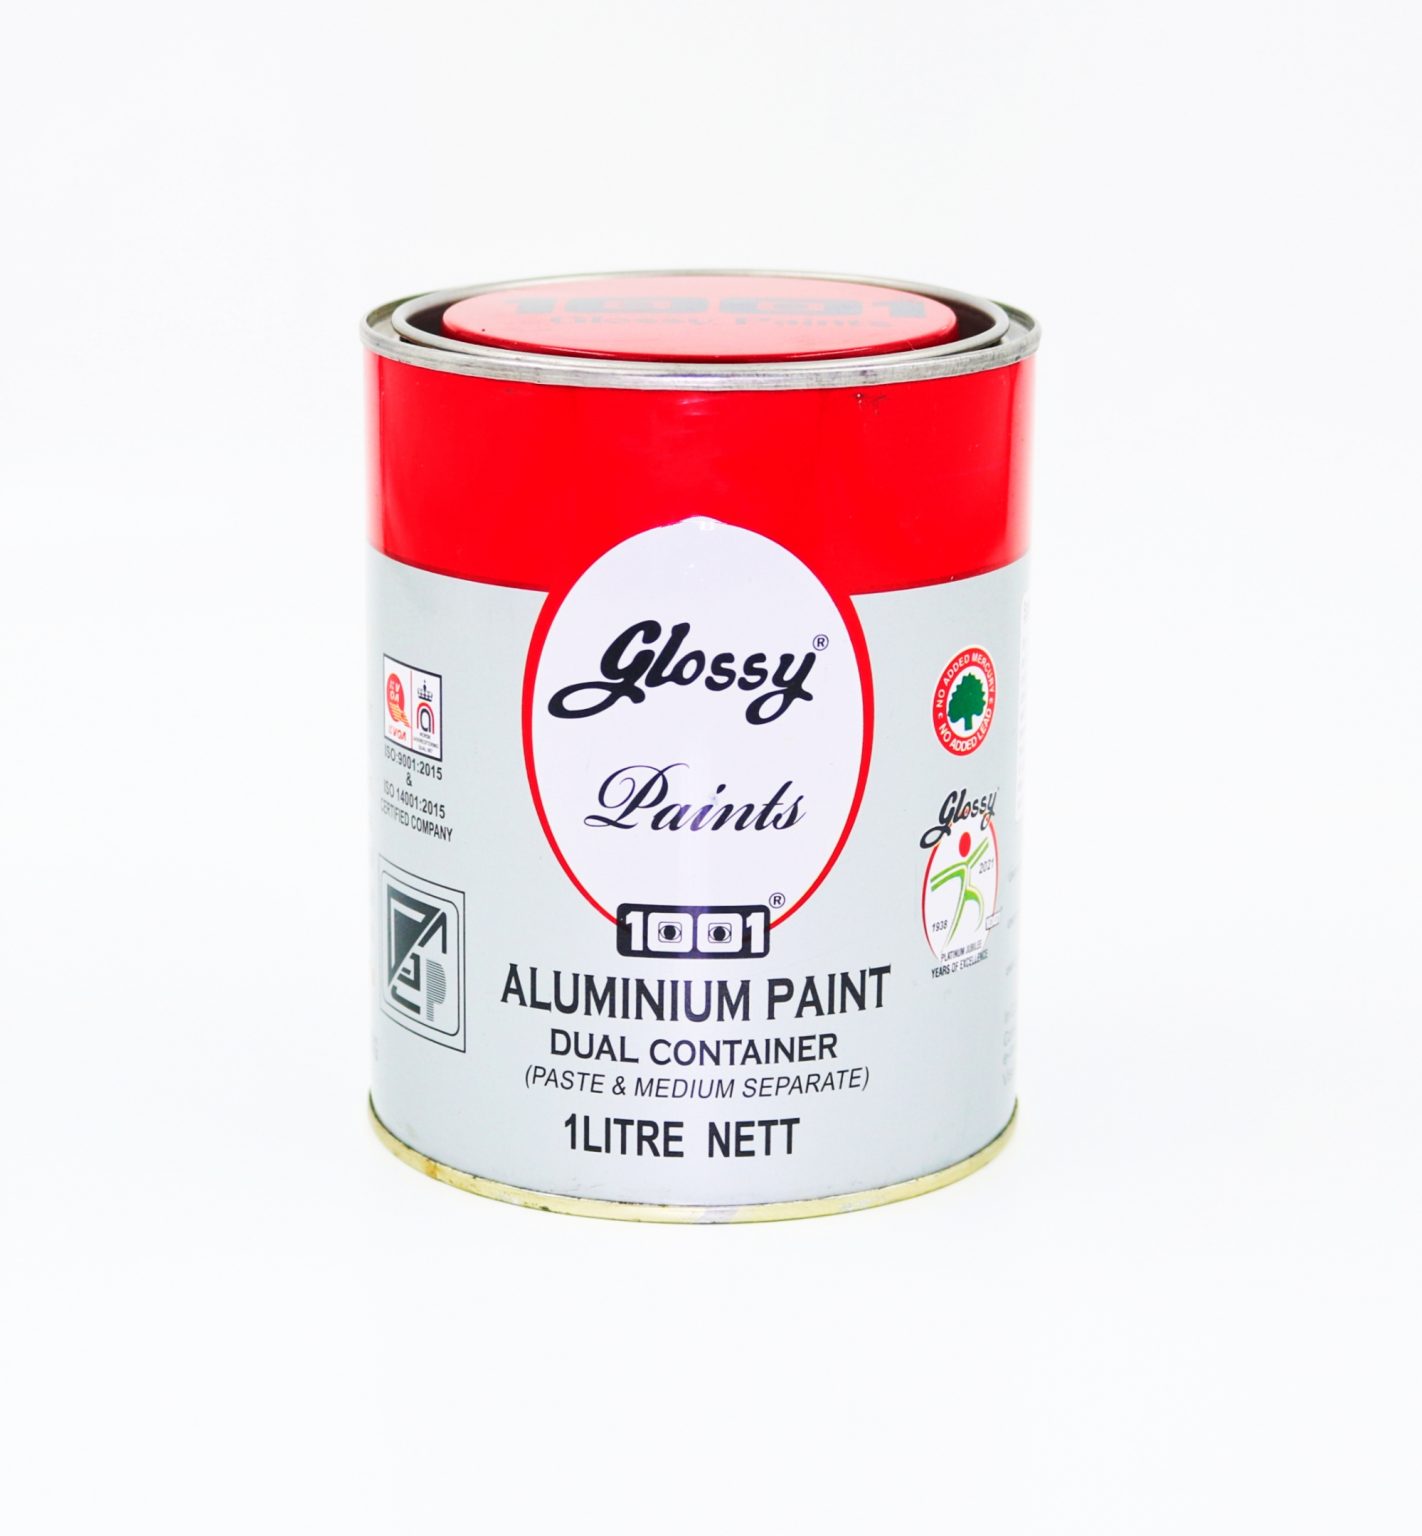 1001 Aluminium Paint – Glossy 1001 Paints